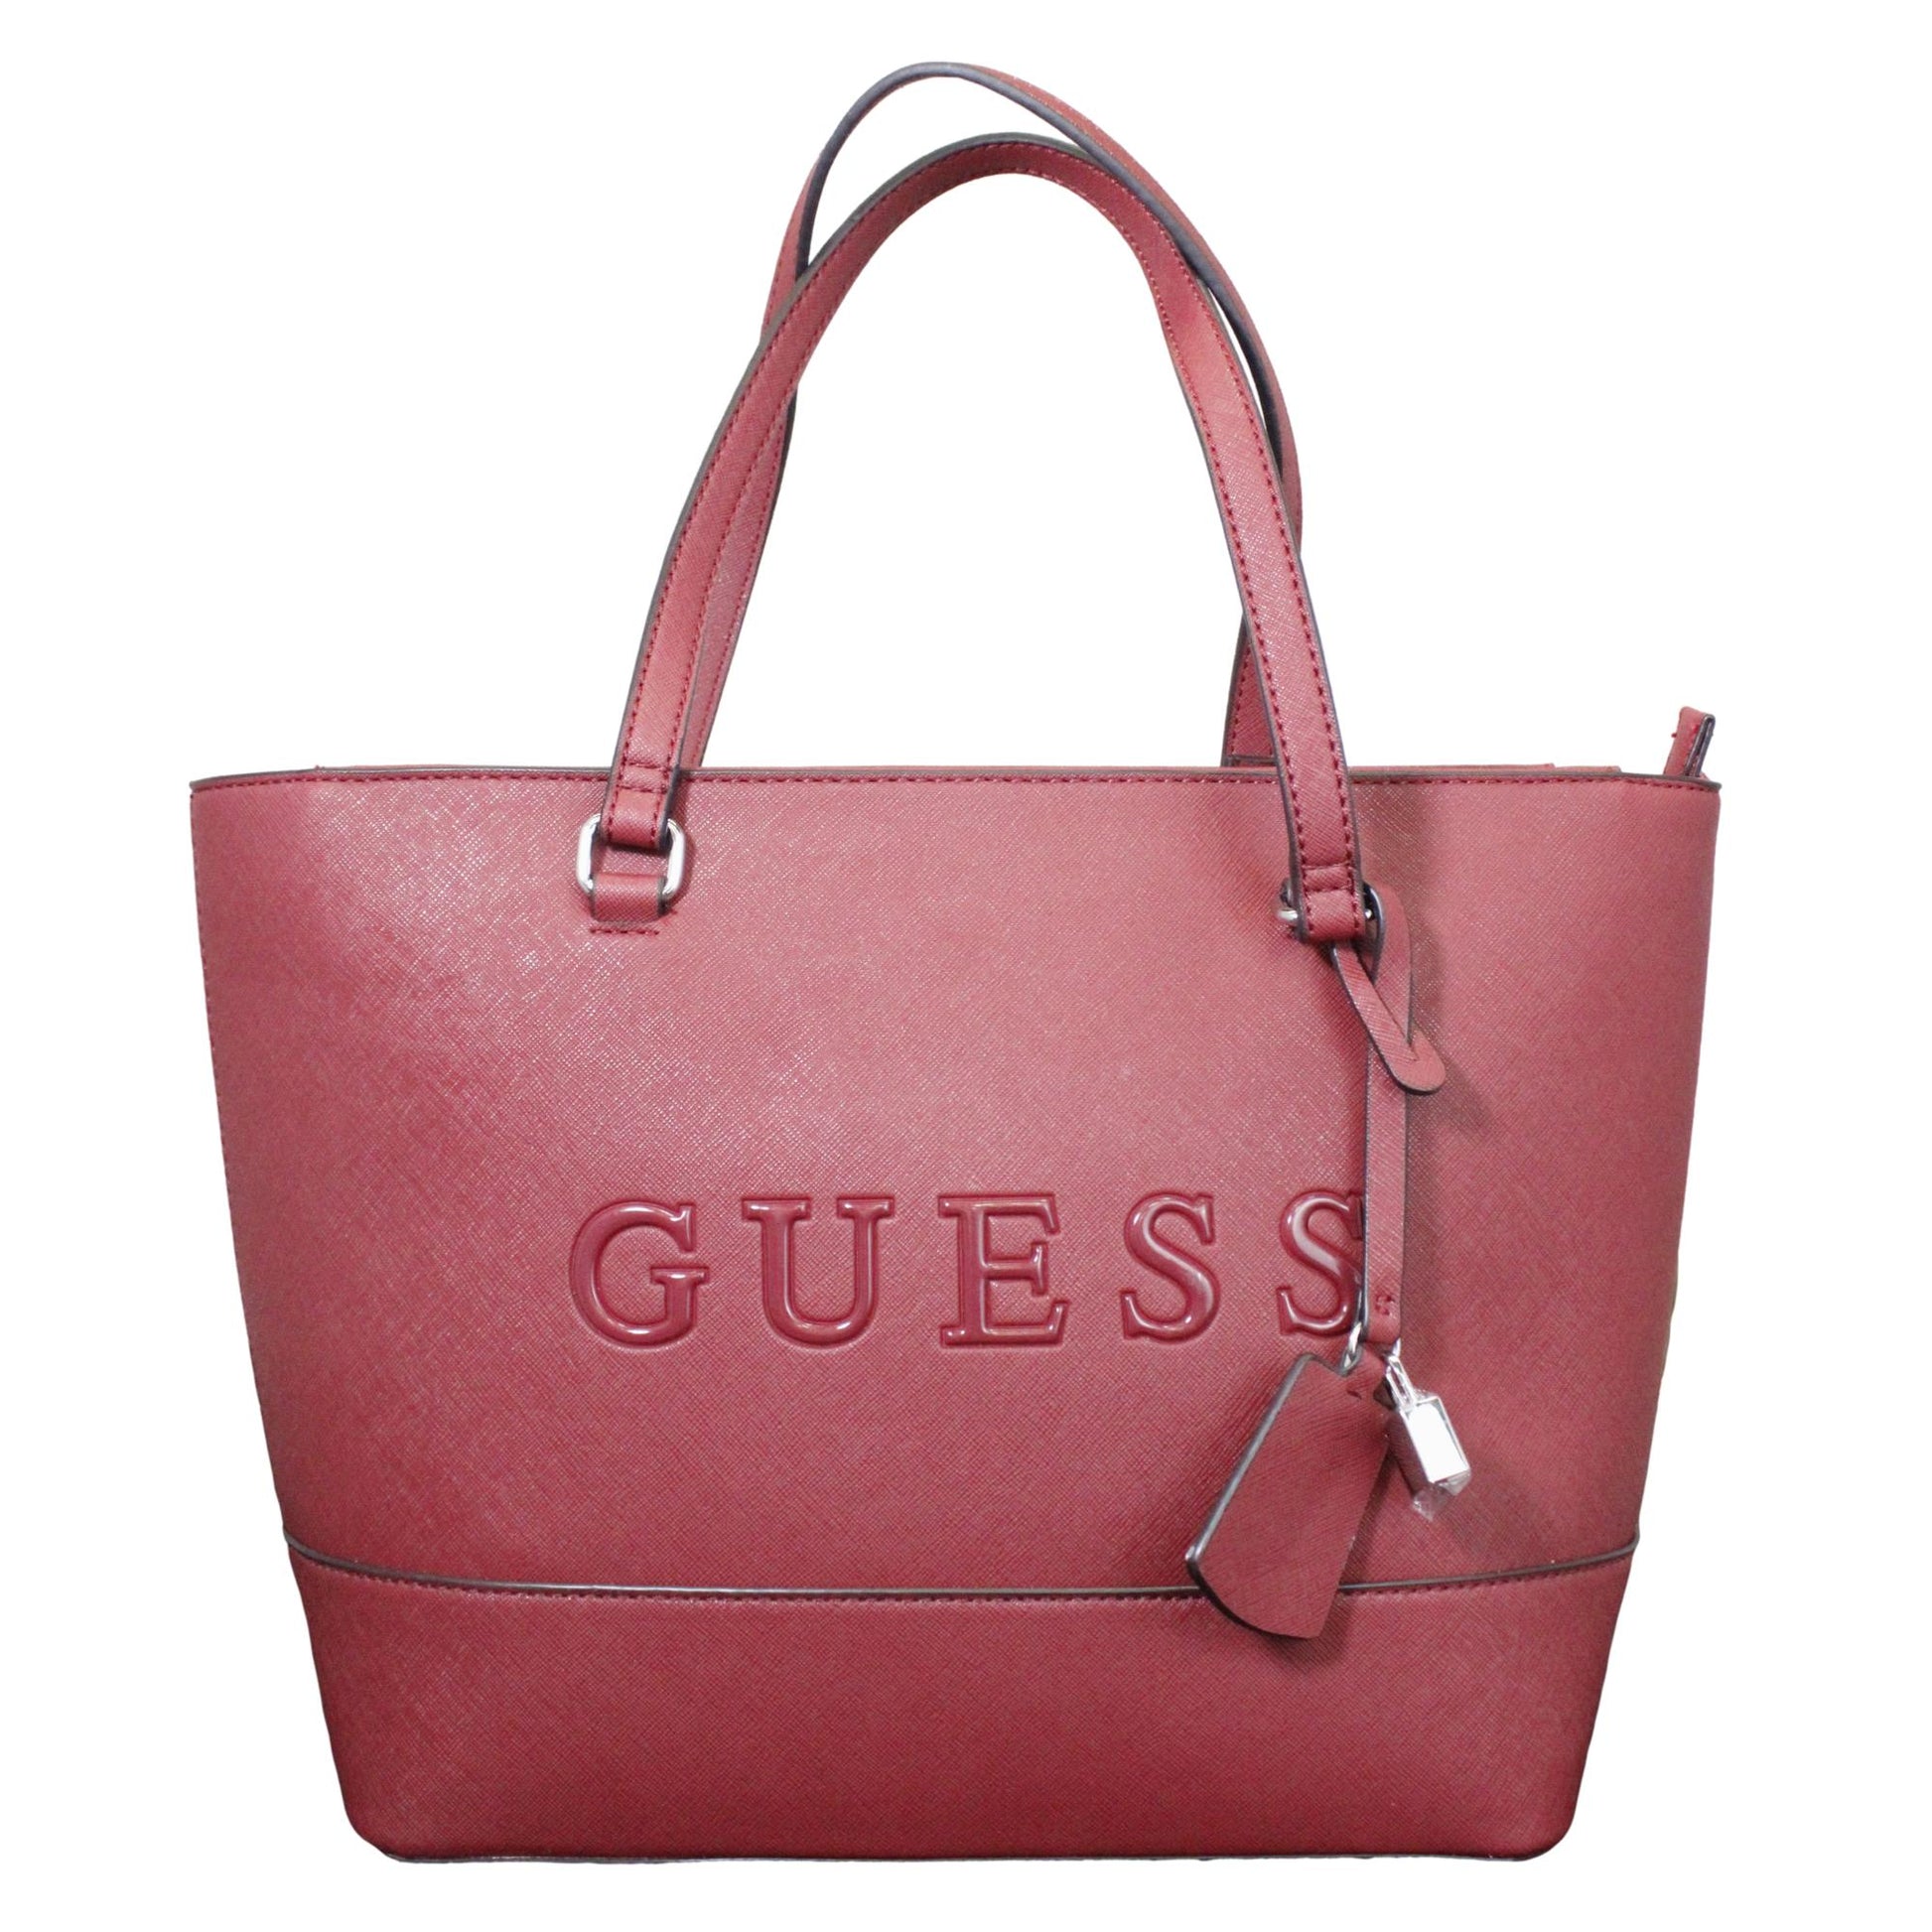 Mujer - Guess - Guess - Backpack, Bolsas